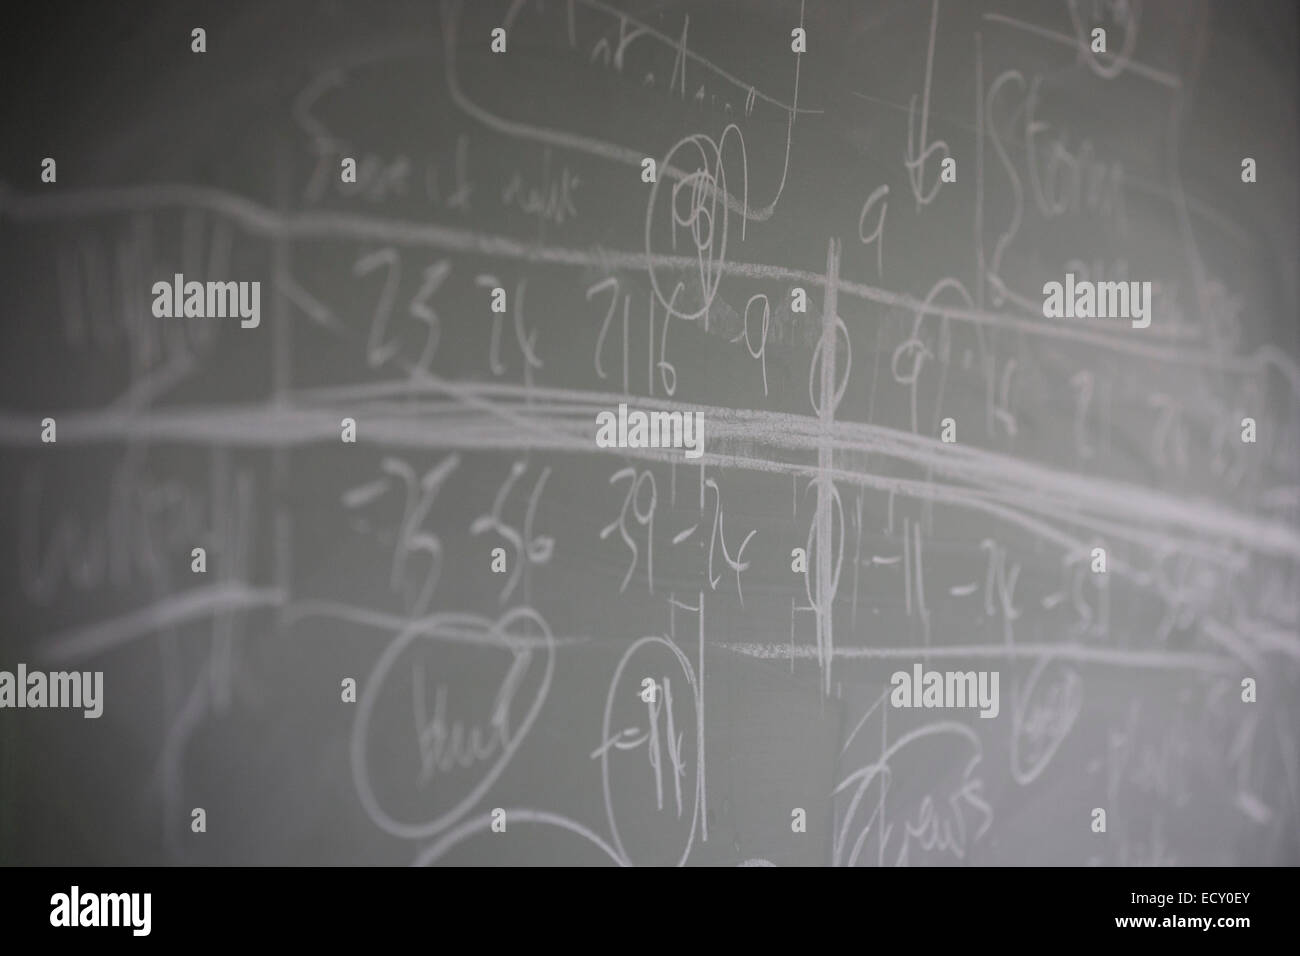 Blackboard-Funktionsweise, Mathematiker und Risiko-Guru, Professor Sir David Spiegelhalter angehören. Stockfoto